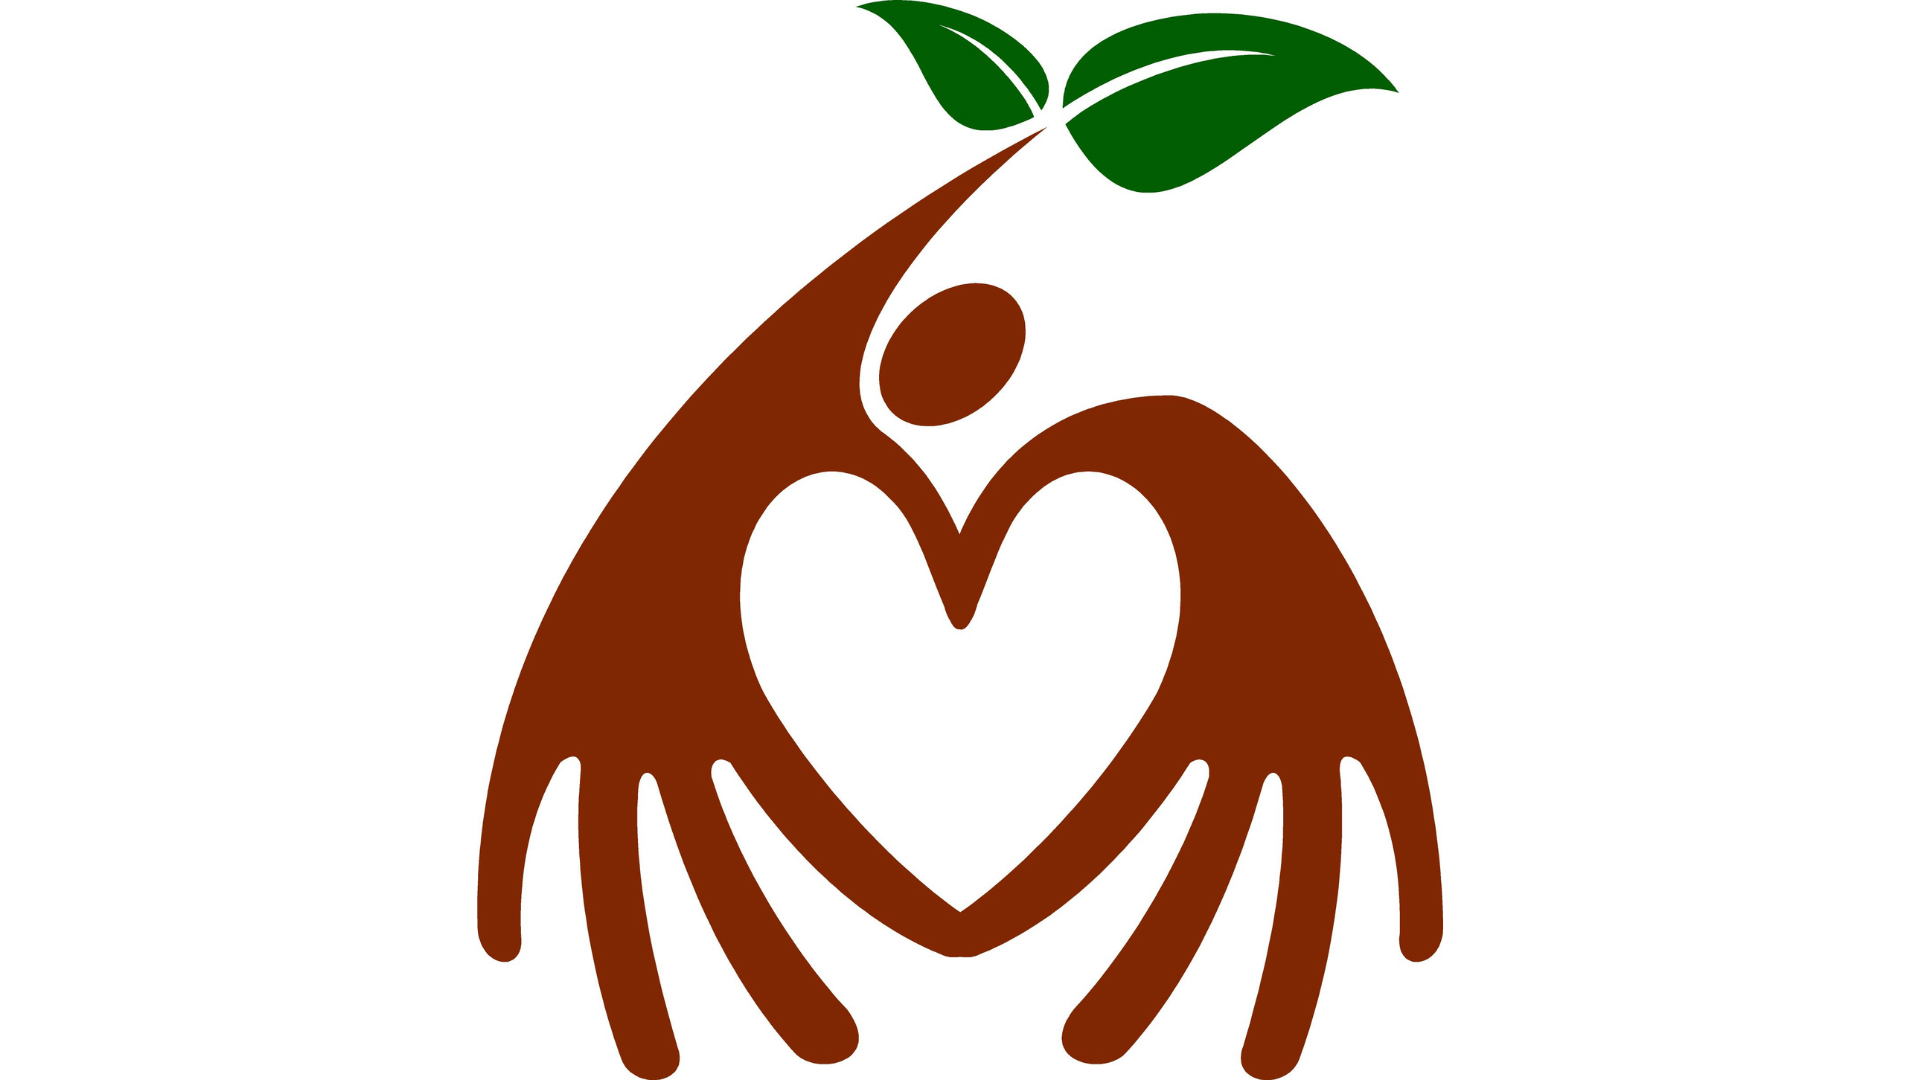 Education For Life Society Canada logo